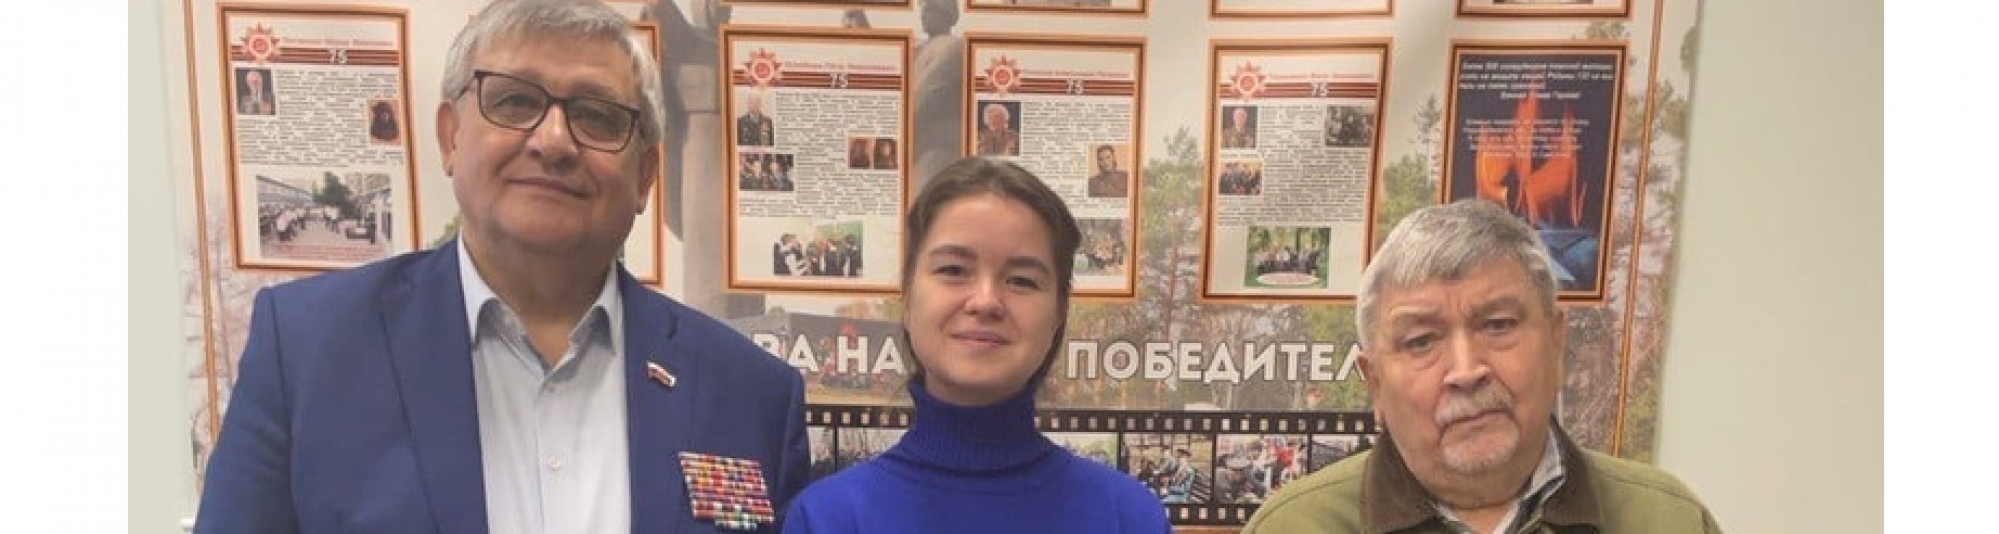 Депутат Ксения Старикова поздравила с праздником членов совета ветеранов